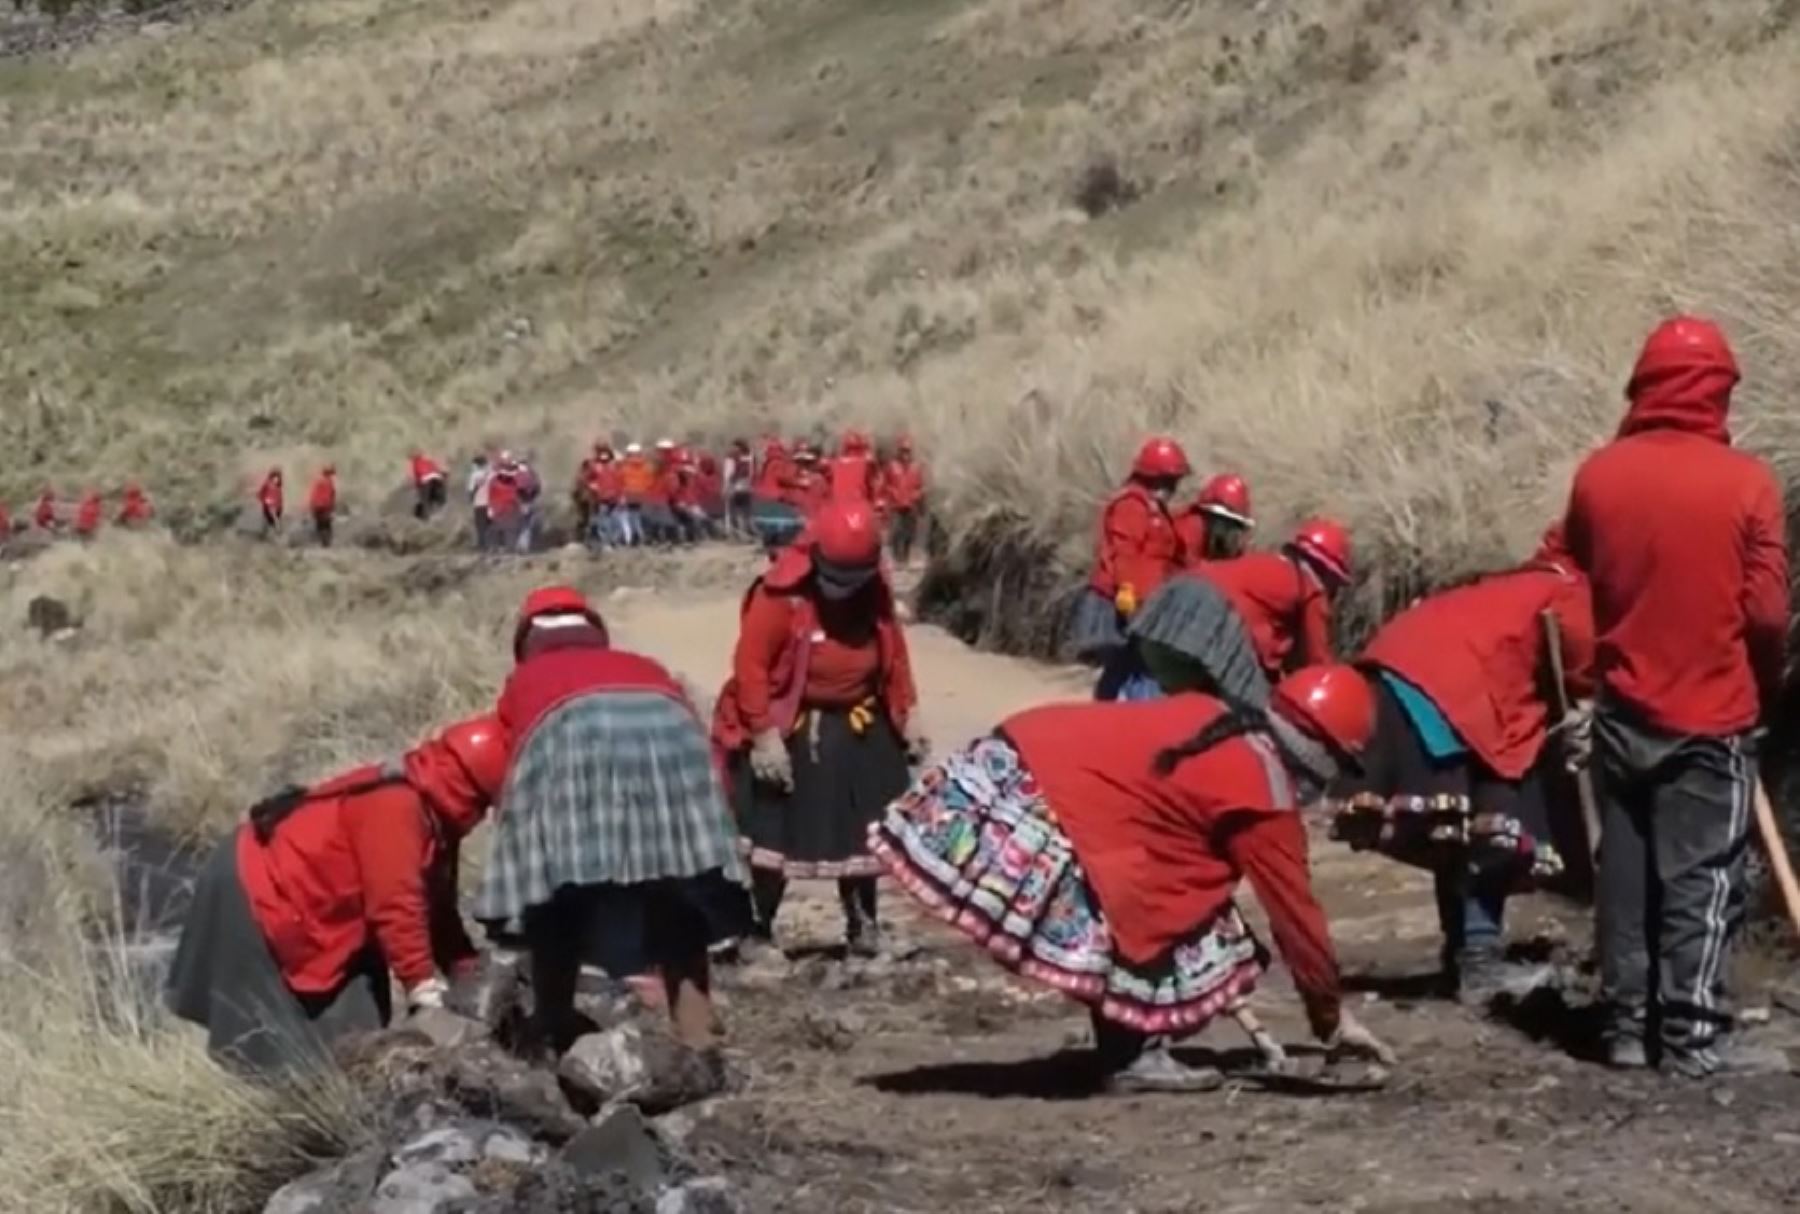 El fortalecimiento de las comunidades que participan del mantenimiento del Qhapaq Ñan es una actividad que genera beneficio social, fortalece el desarrollo de los procesos participativos para la protección y salvaguarda del gran Camino Inca.